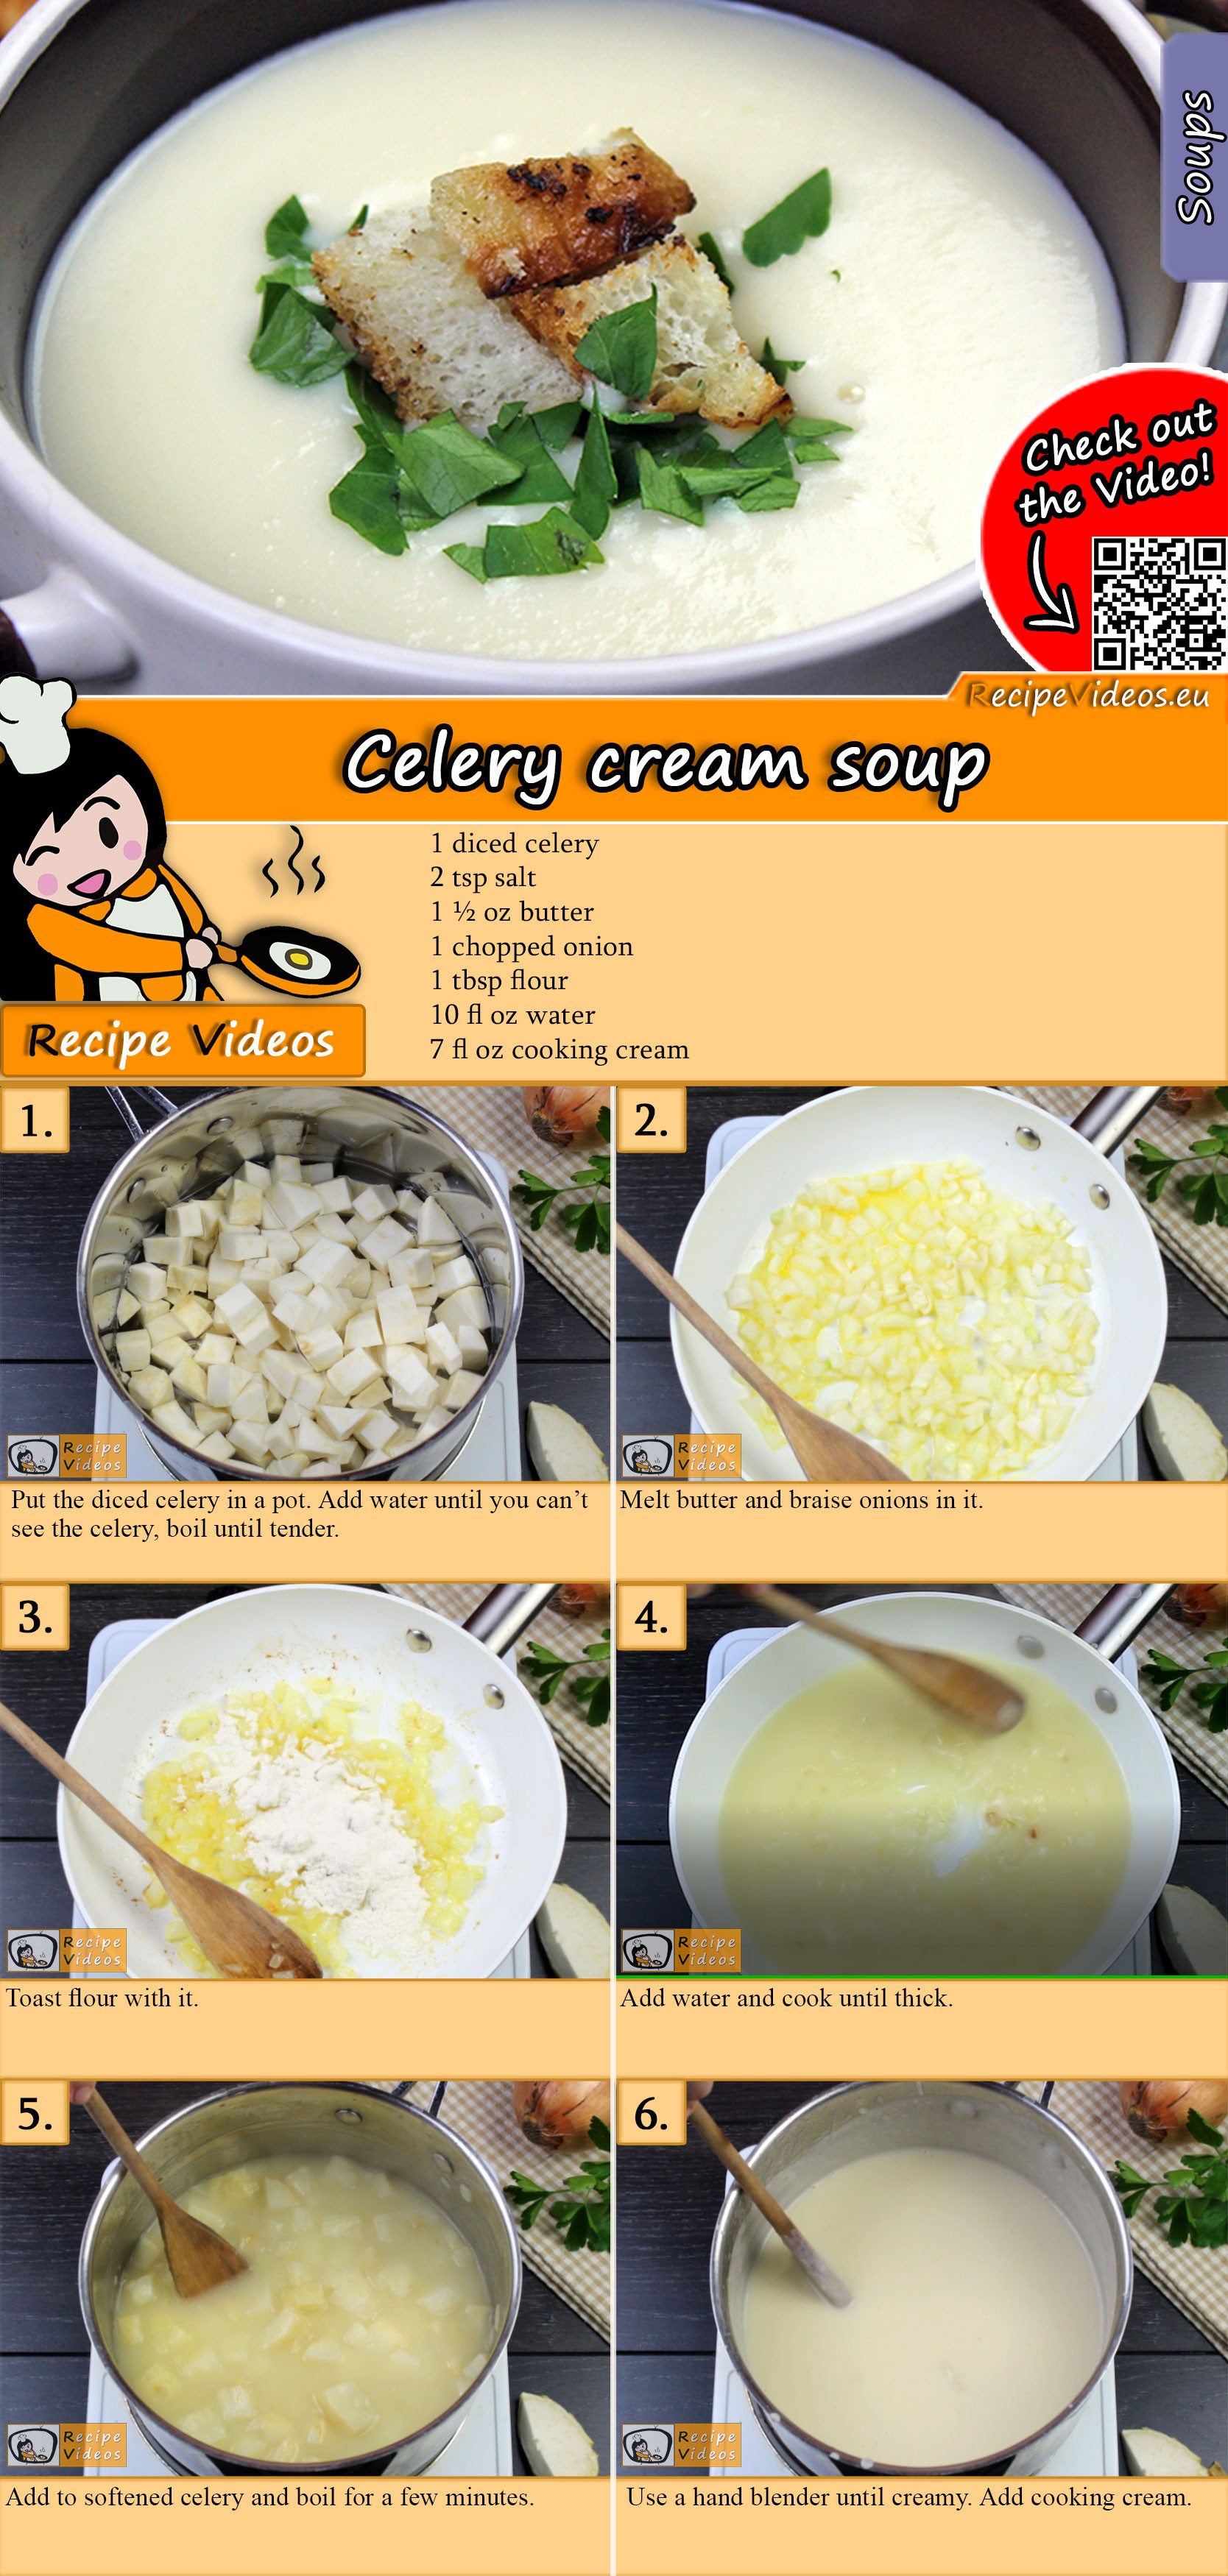 Celery cream soup recipe with video